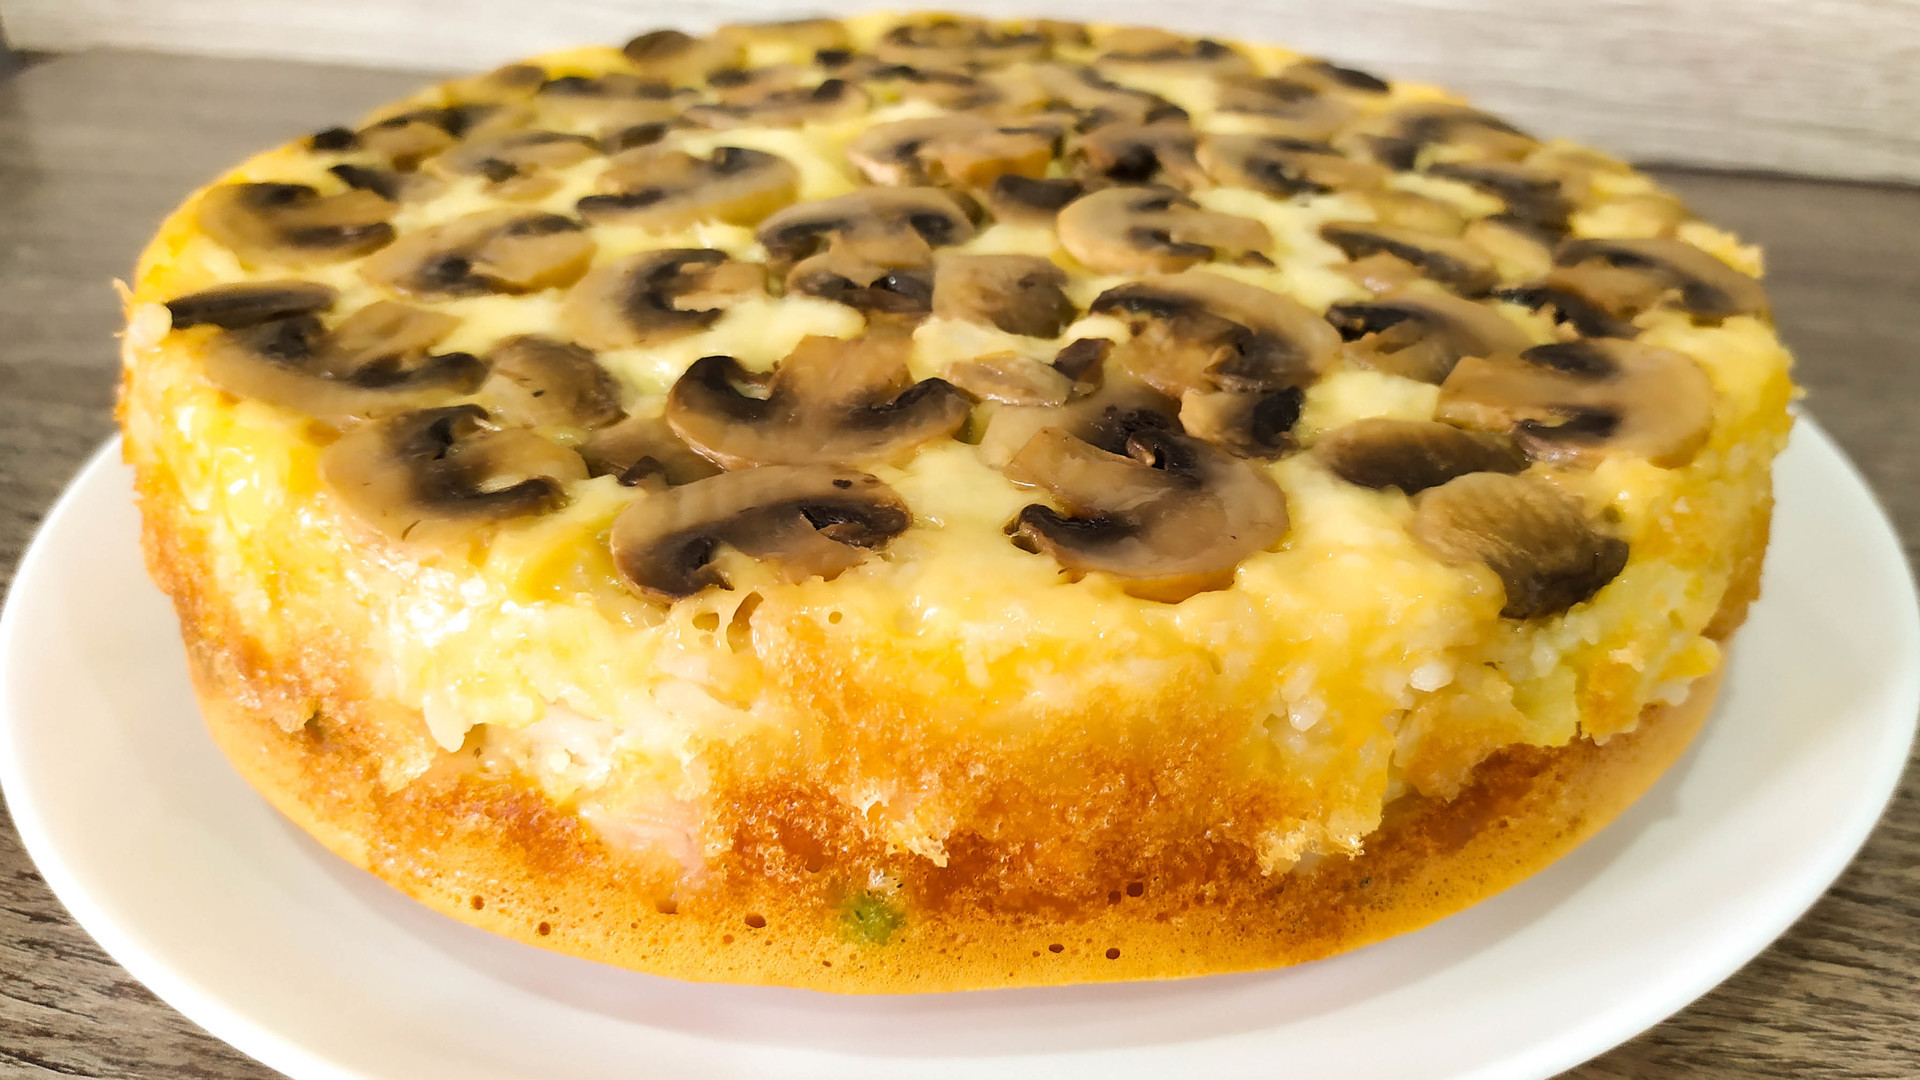 Фото к рецепту: Слоеный пирог-перевертыш с грибами, курицей и рисом